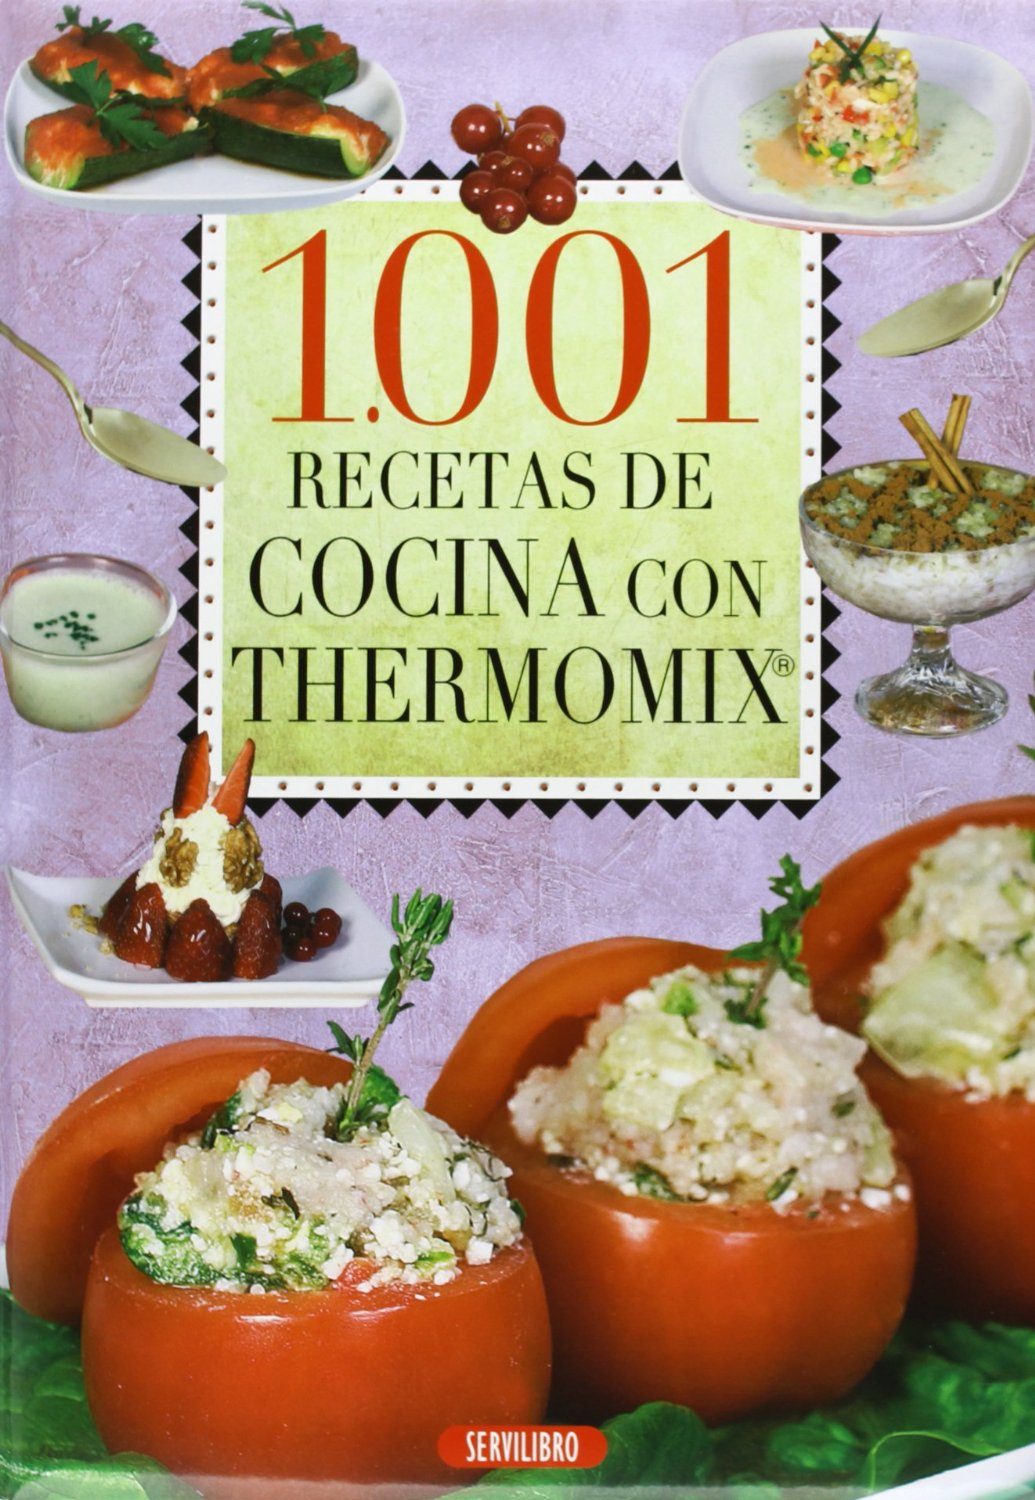 1001 RECETAS DE COCINA CON THERMOMIX | VV.AA. | Comprar ...